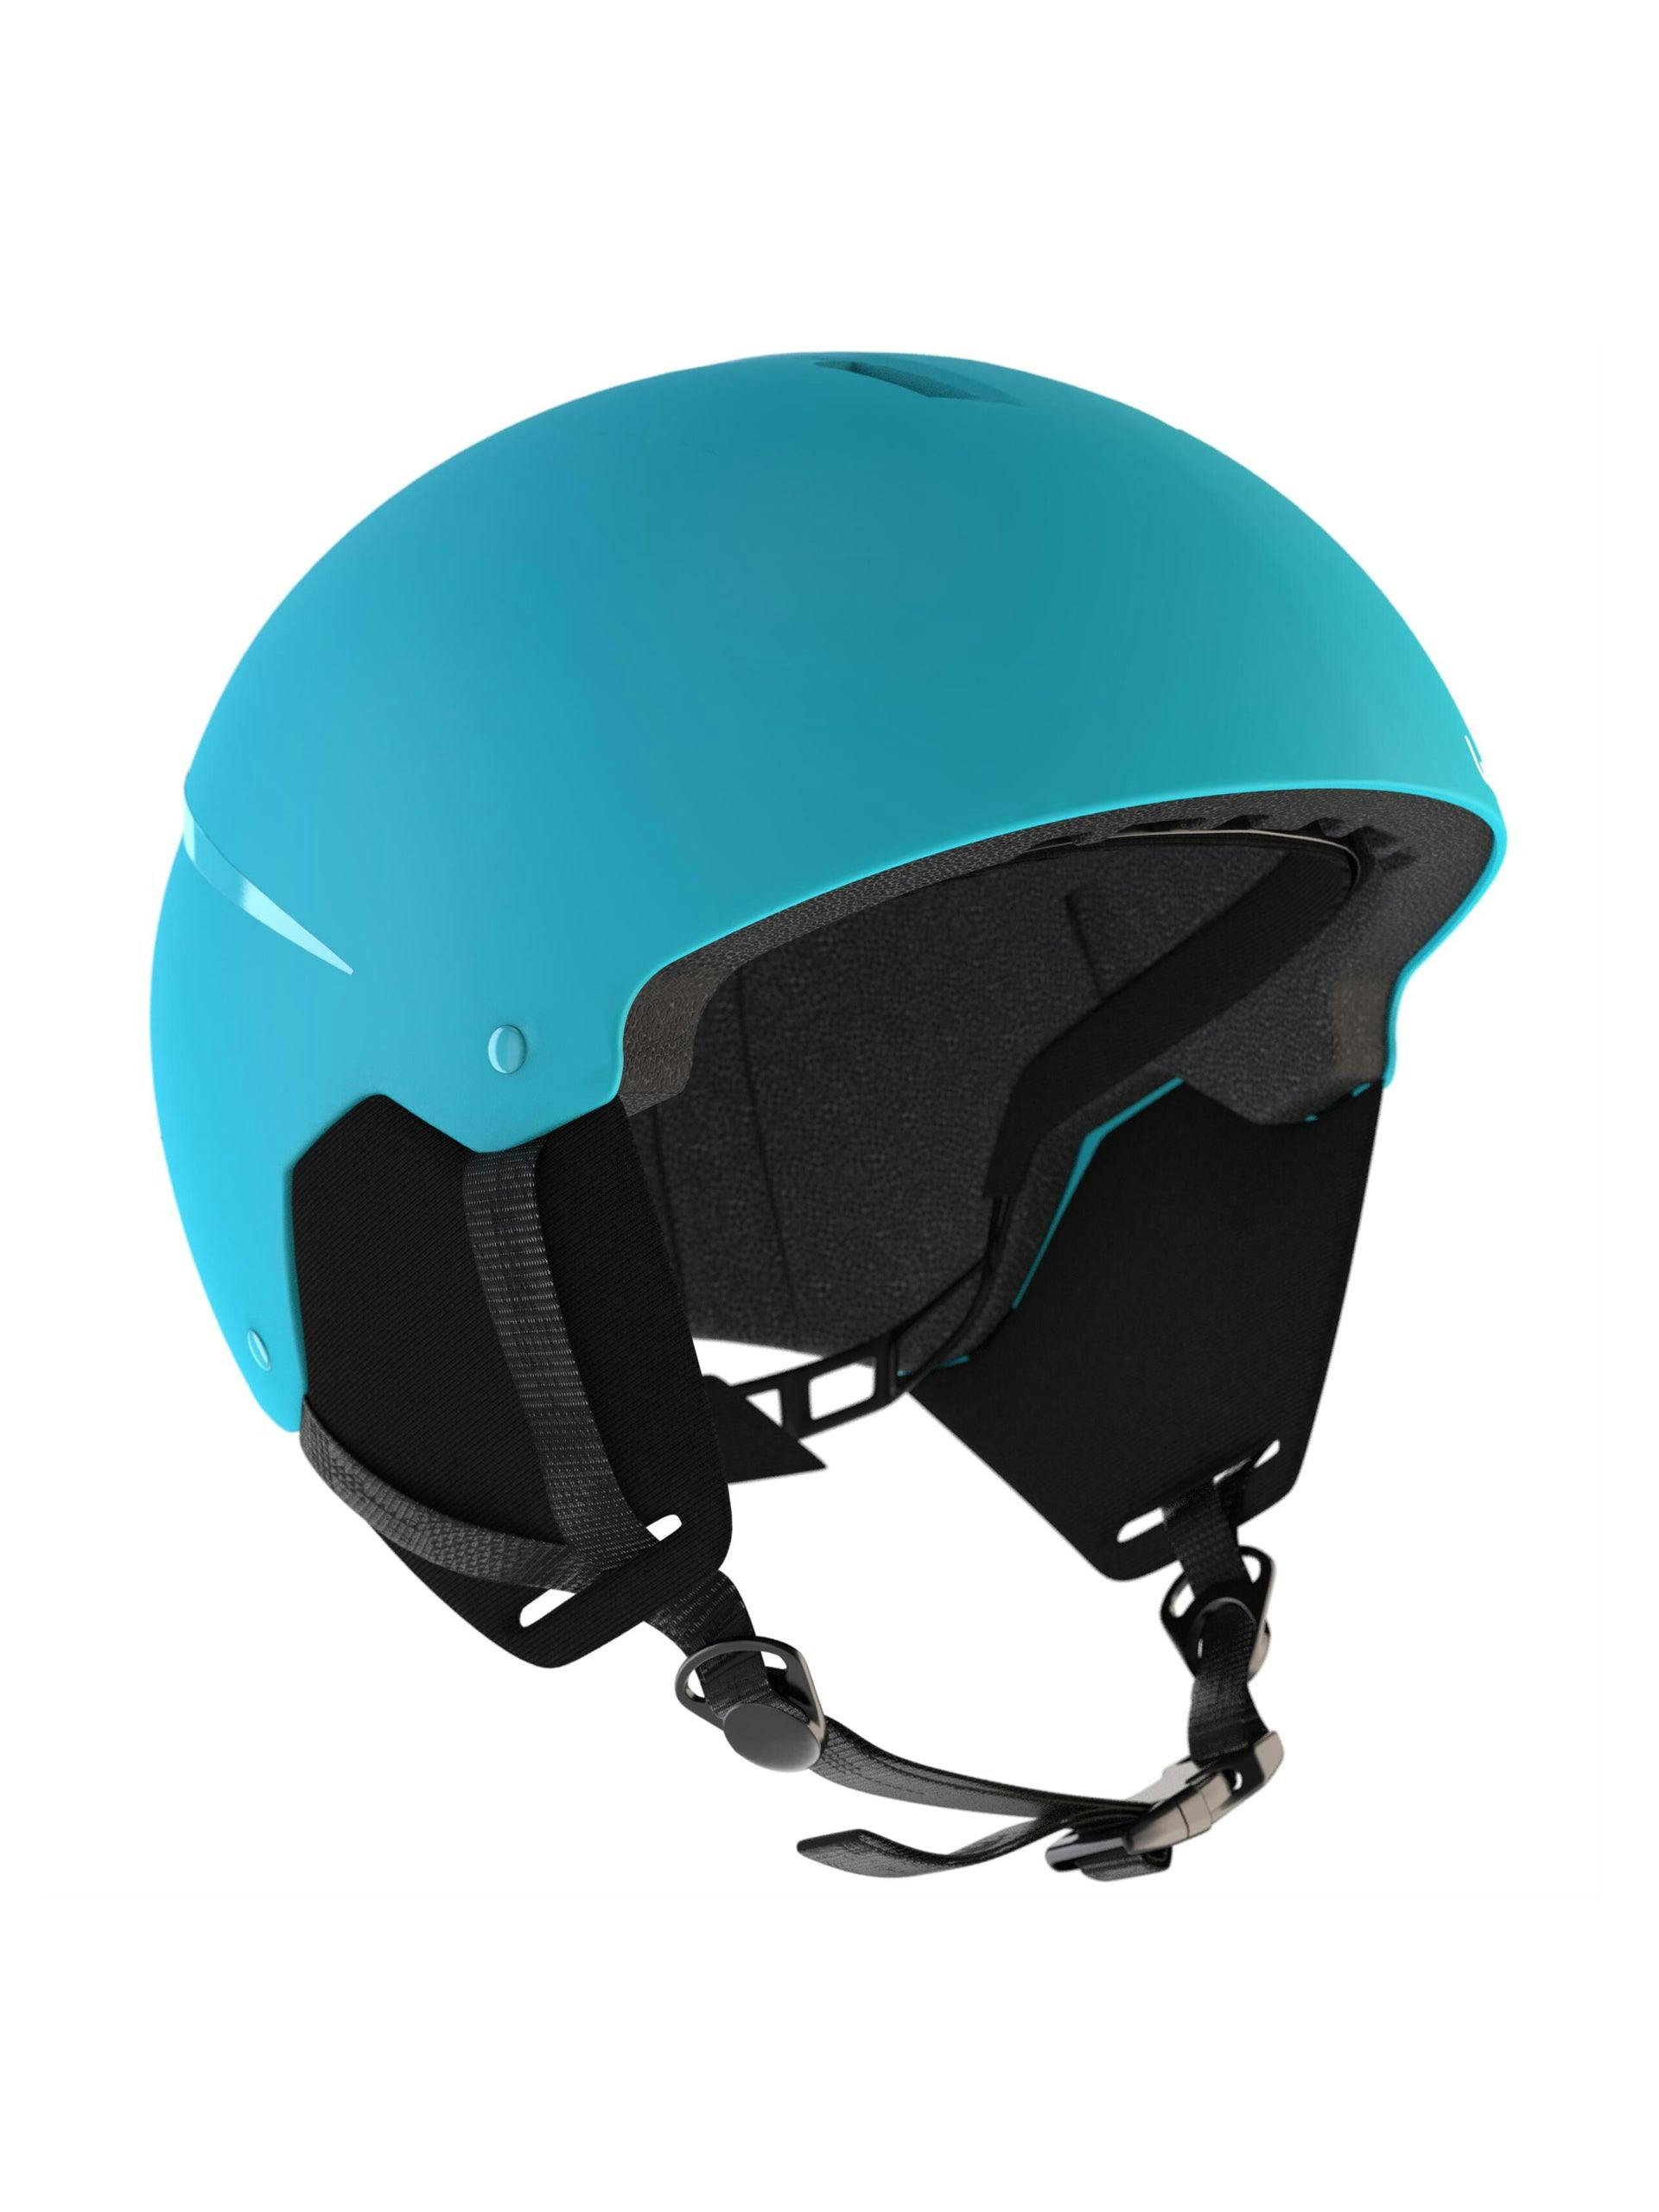 Blue ski helmet